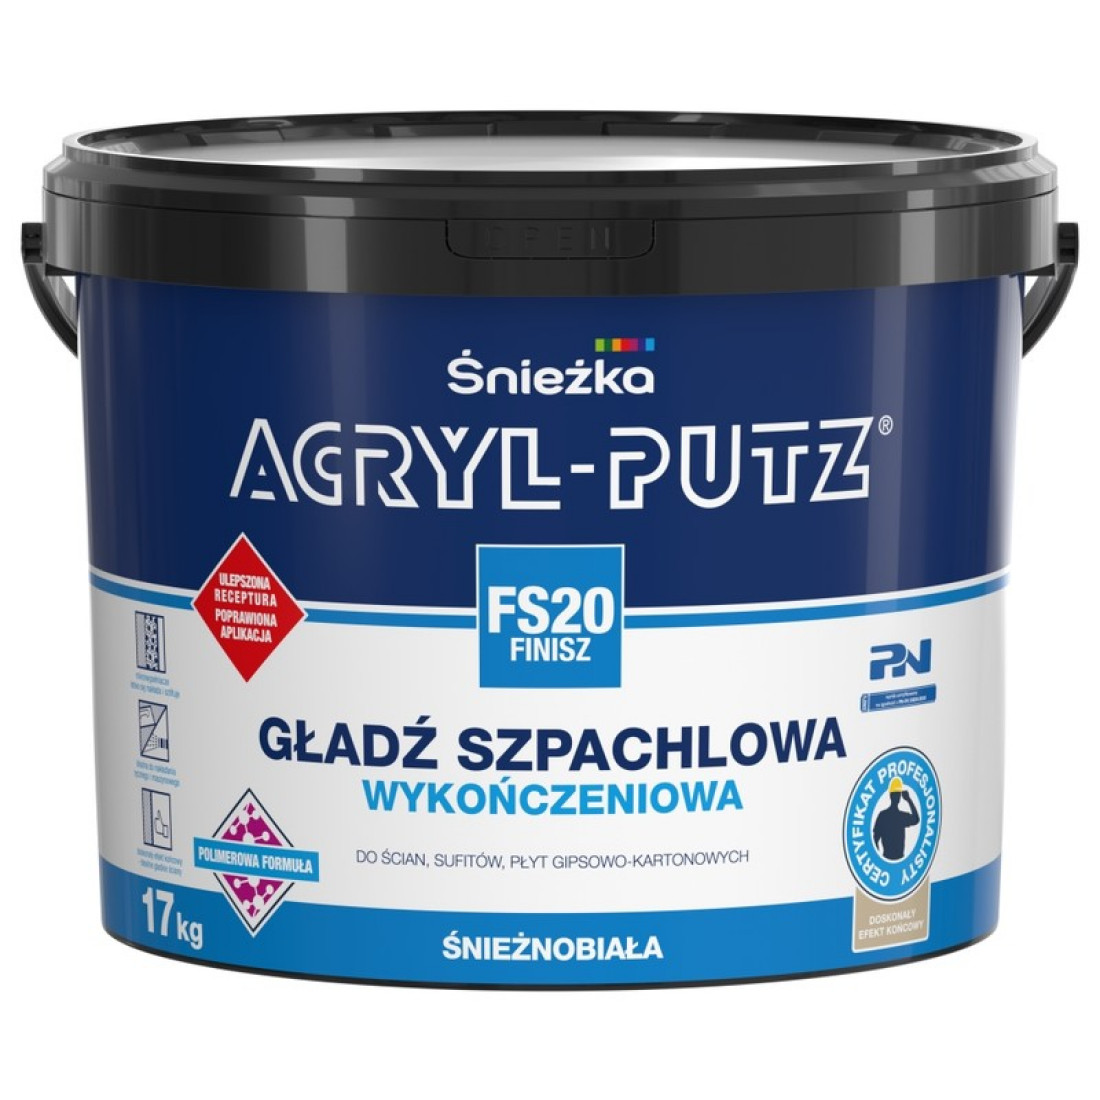 Gładź szpachlowa ACRYL-PUTZ® FS 20 FINISZ w nowej, ulepszonej formule